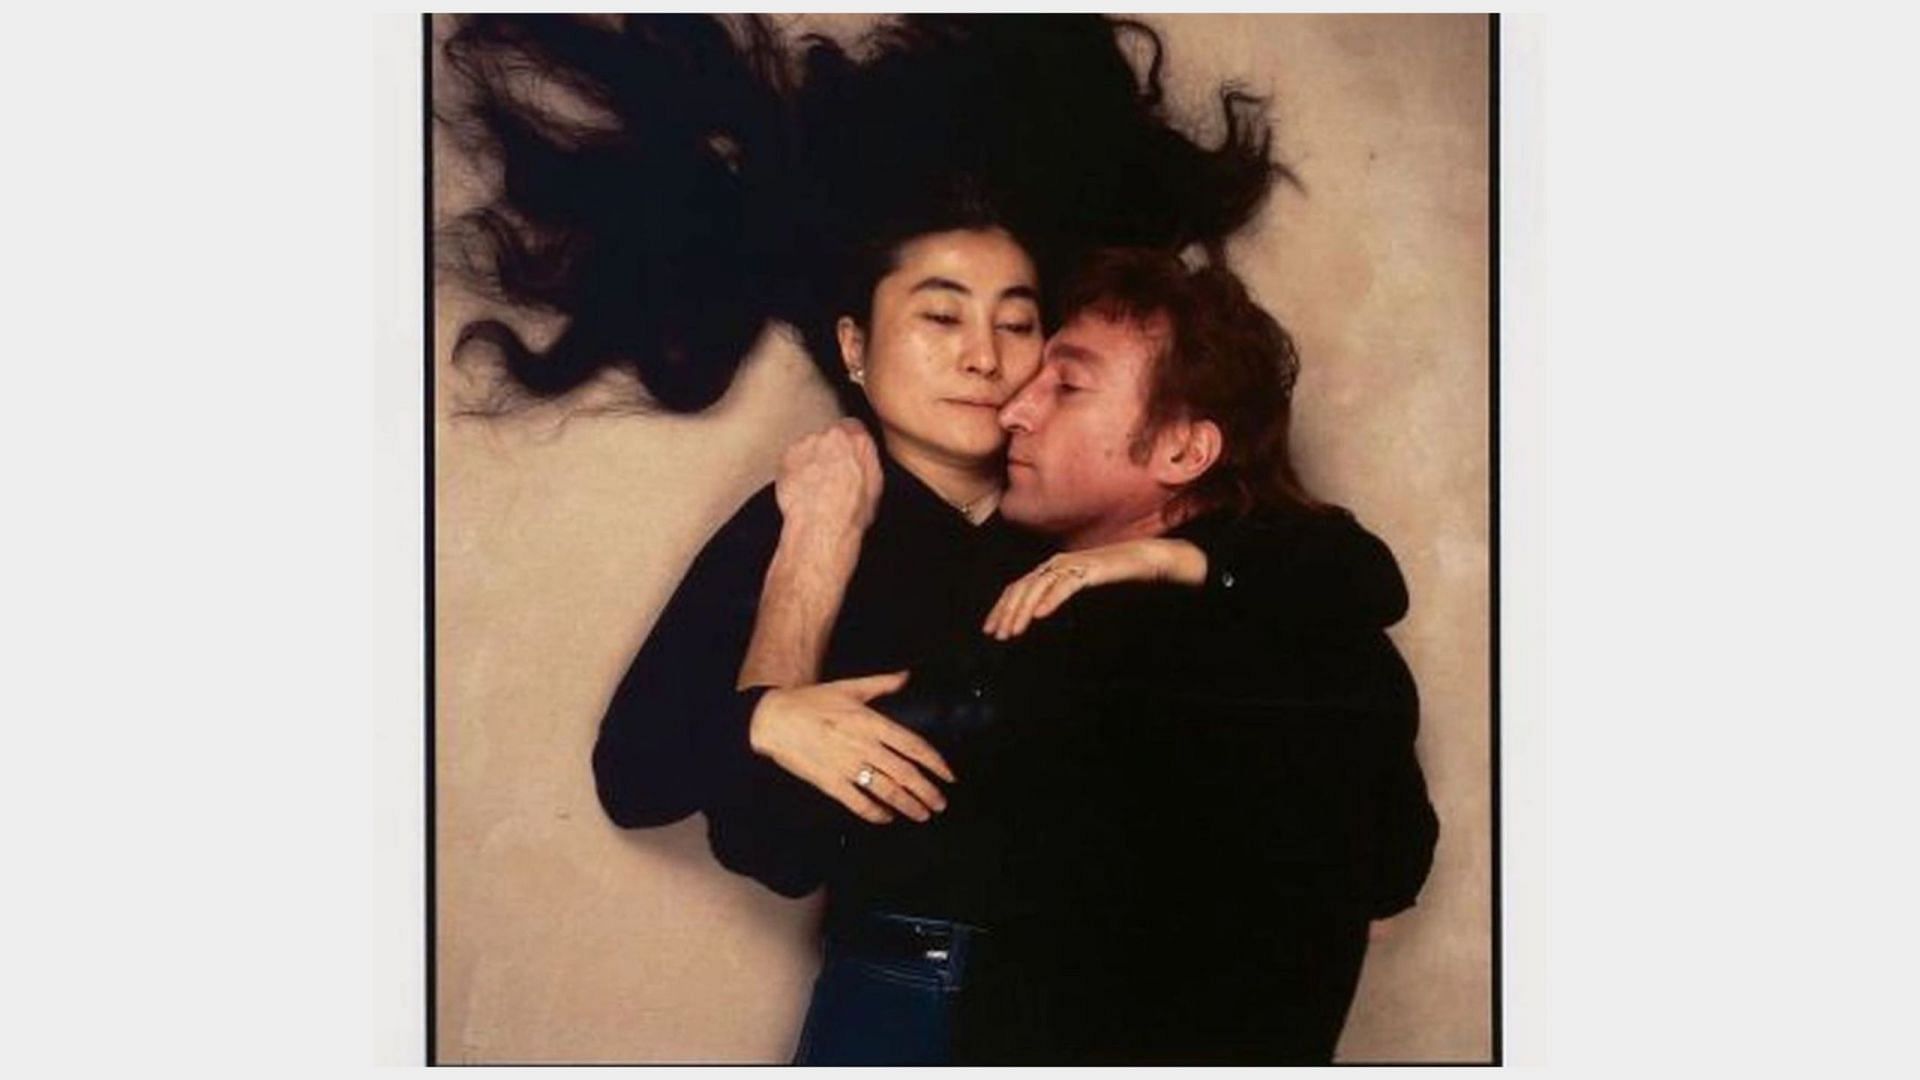 Yoko Ono and her relationship timeline with John Lennon. (Image via Instagram/ @Johnlennon)